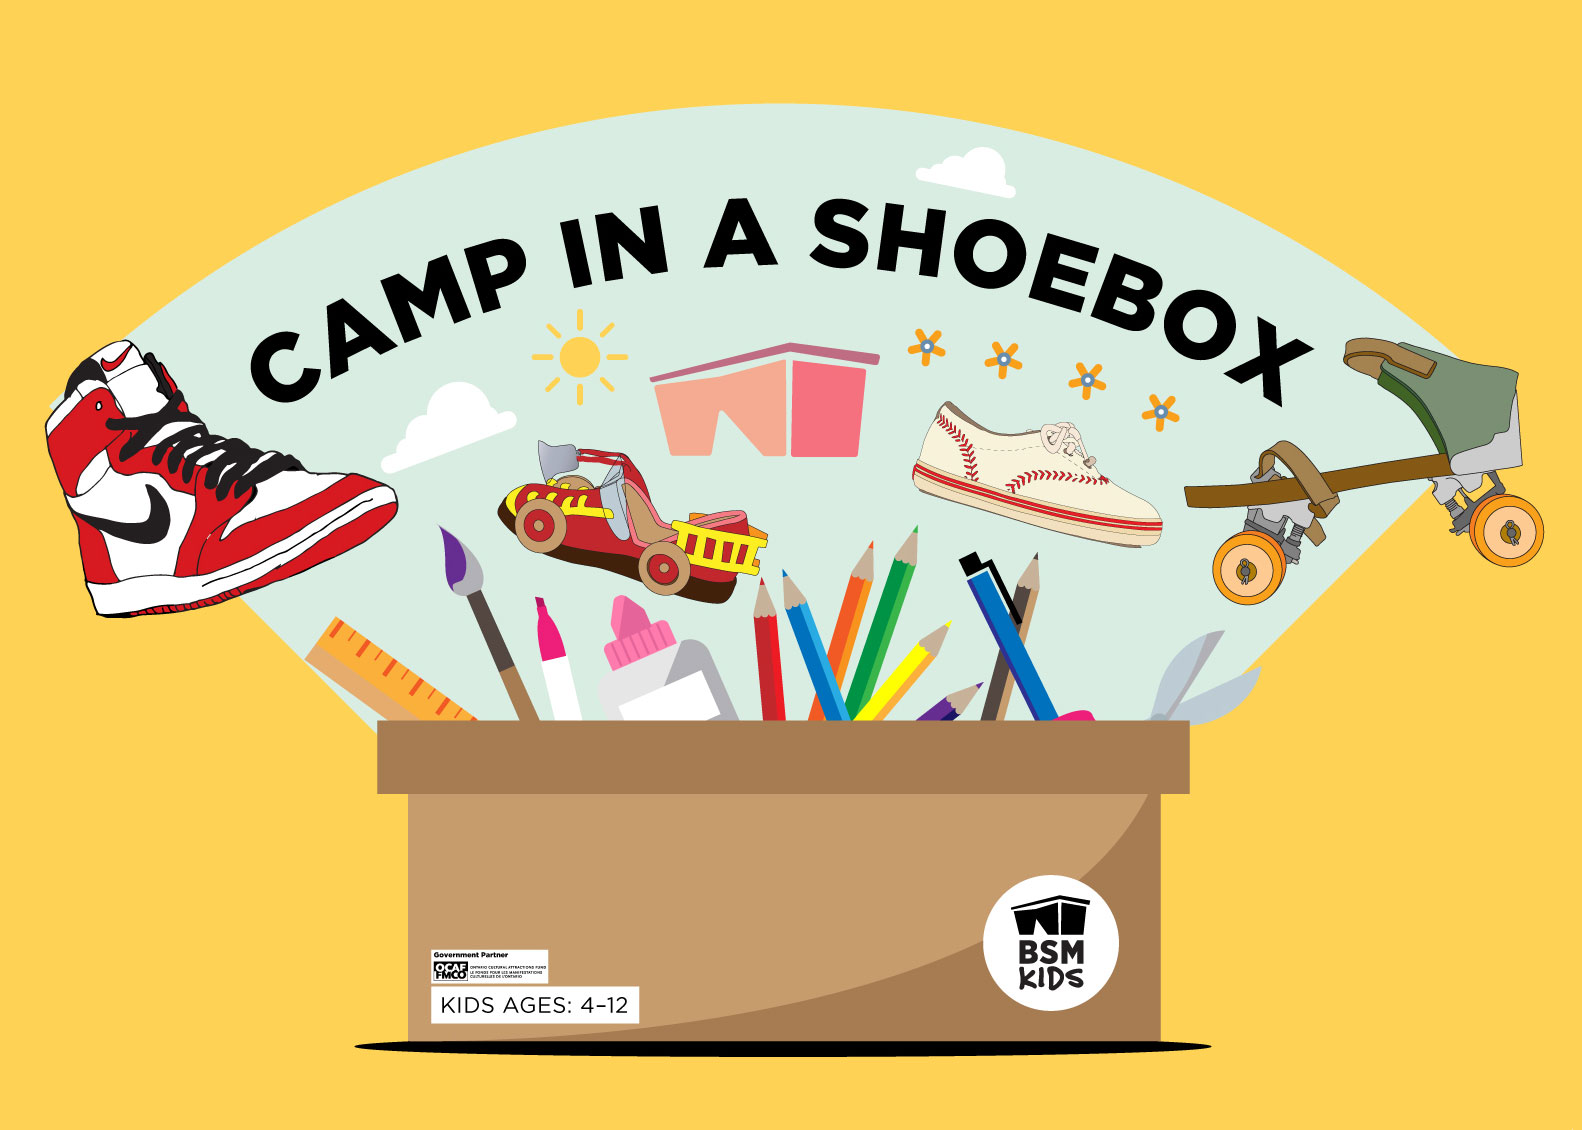 Camp in a Shoebox